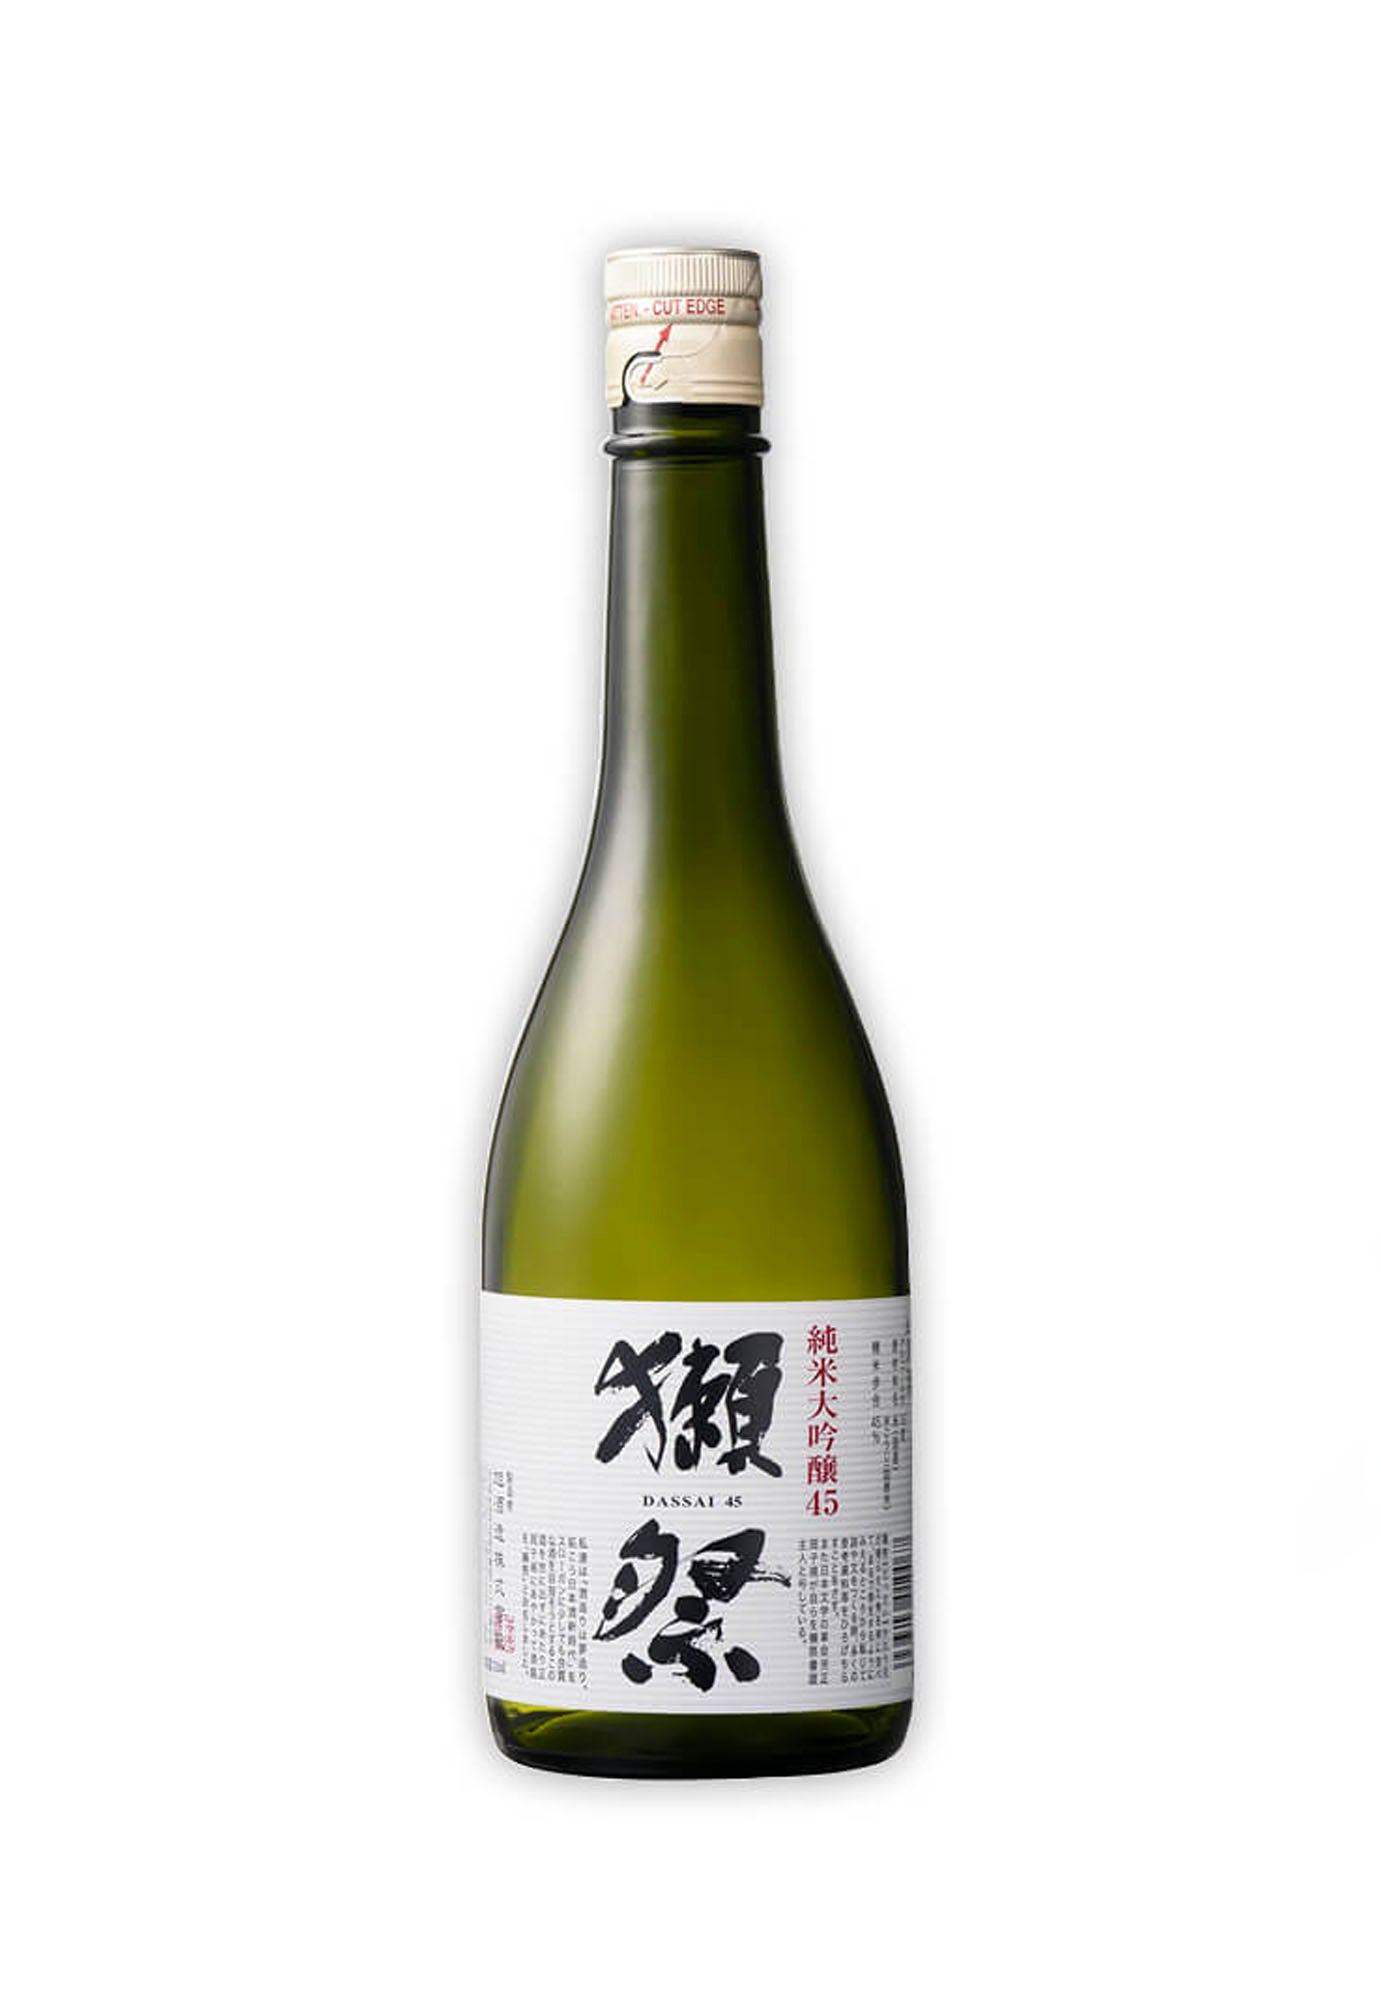 Asahi Shuzo Dassai '45' Junmai Daiginjo Sake - 720 ml